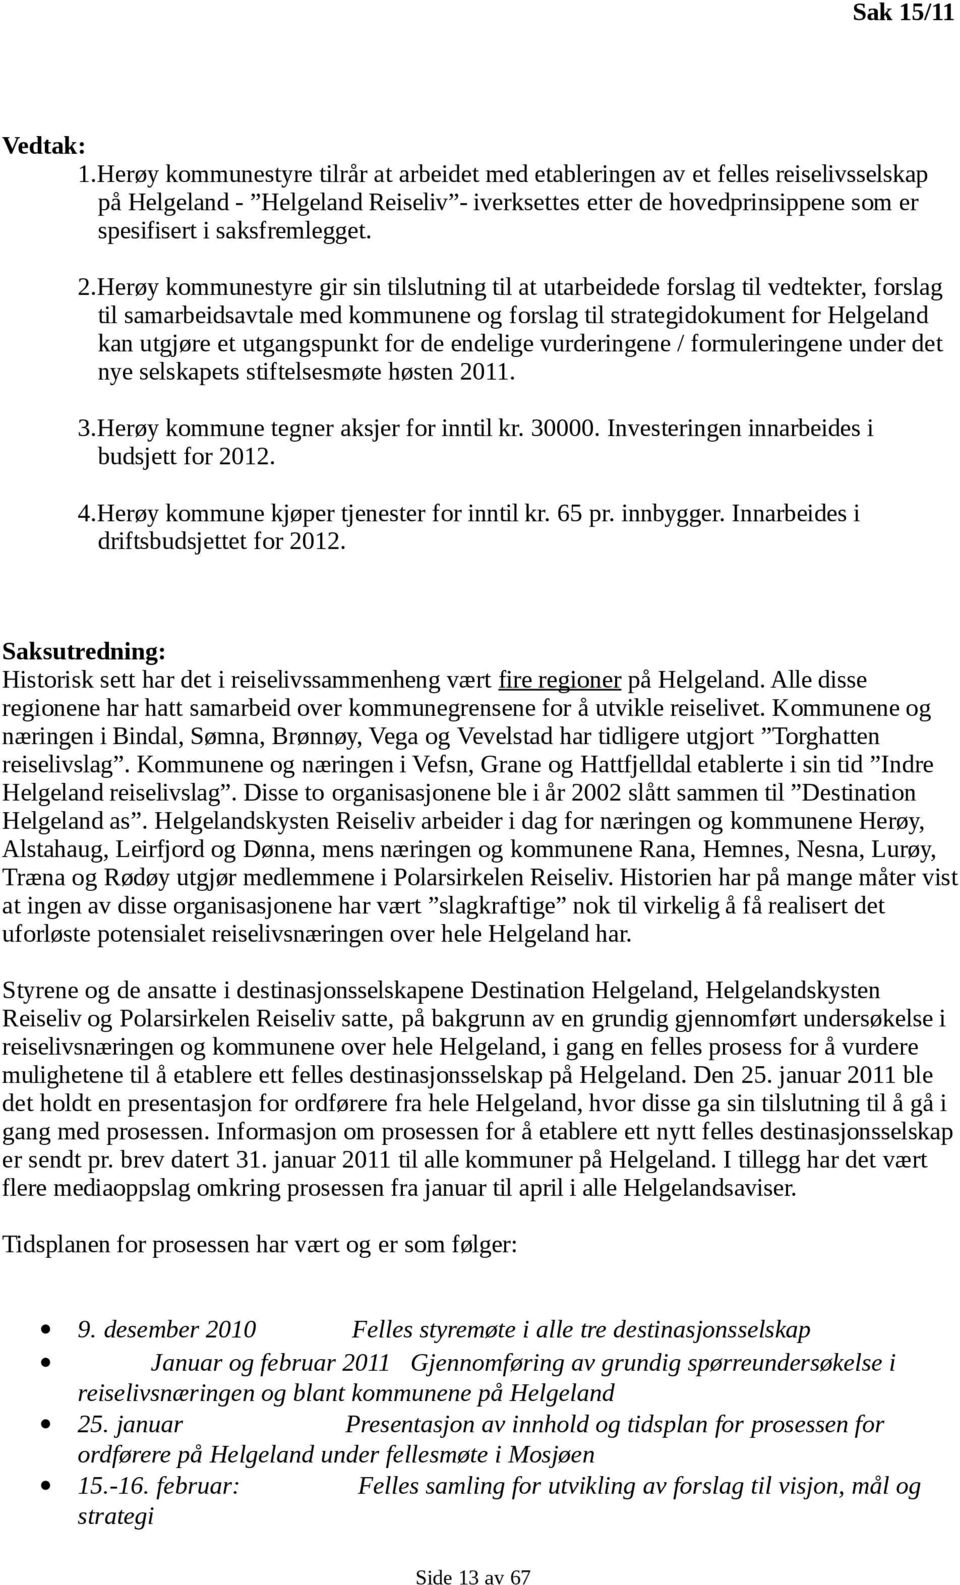 Herøy kommunestyre gir sin tilslutning til at utarbeidede forslag til vedtekter, forslag til samarbeidsavtale med kommunene og forslag til strategidokument for Helgeland kan utgjøre et utgangspunkt